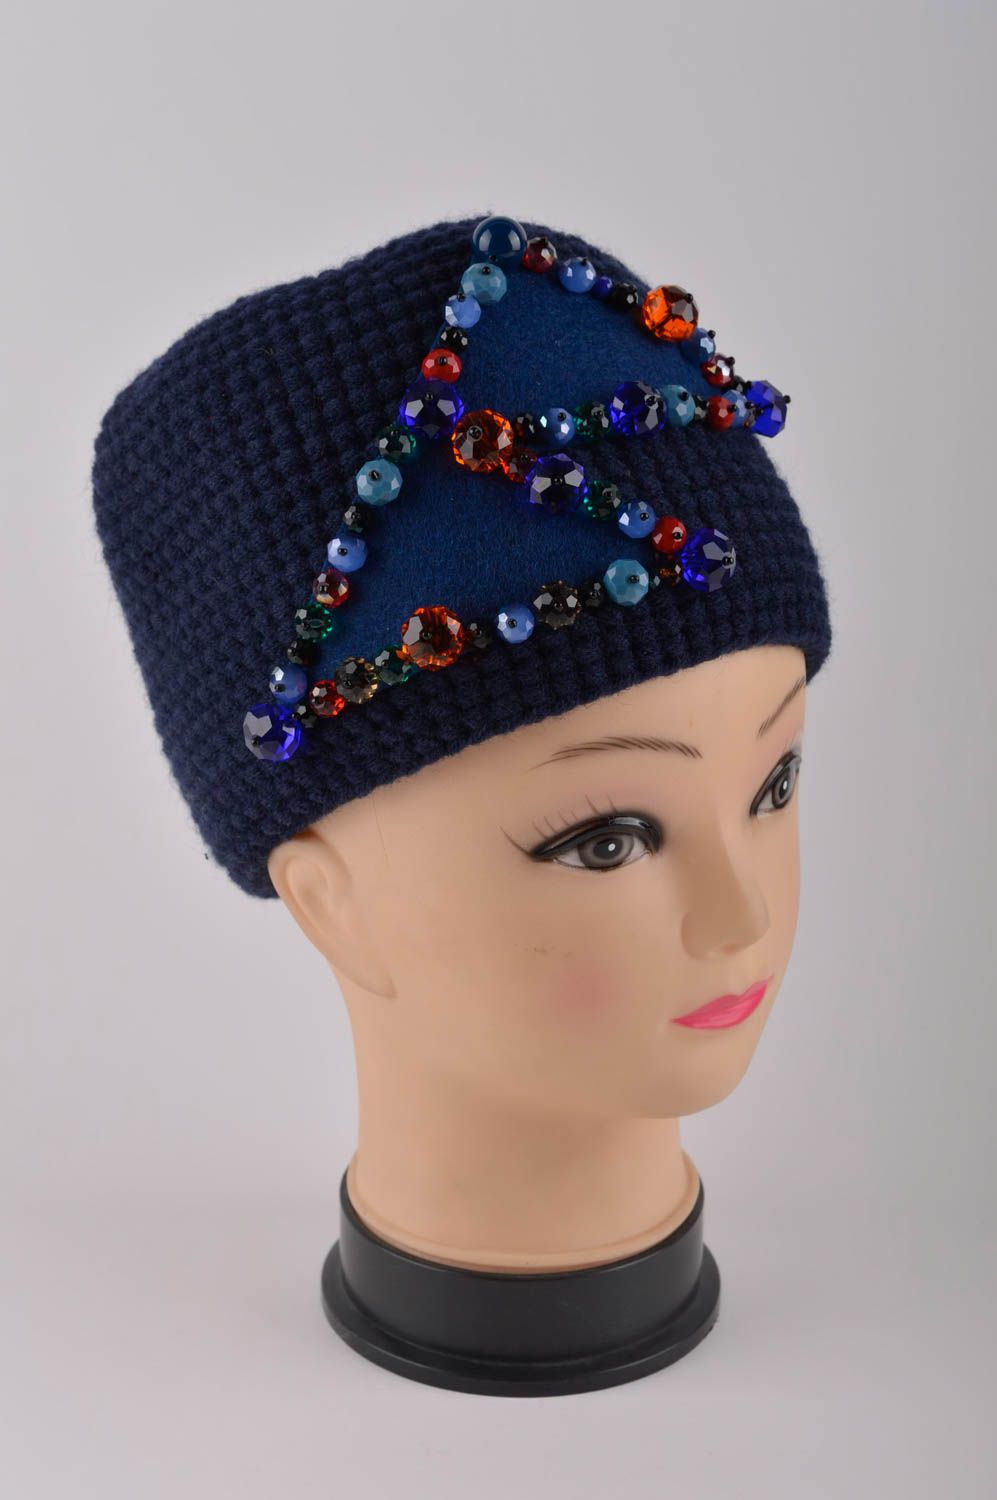 Handmade womens hat warm hat woolen hat designer accessories gifts for women photo 2